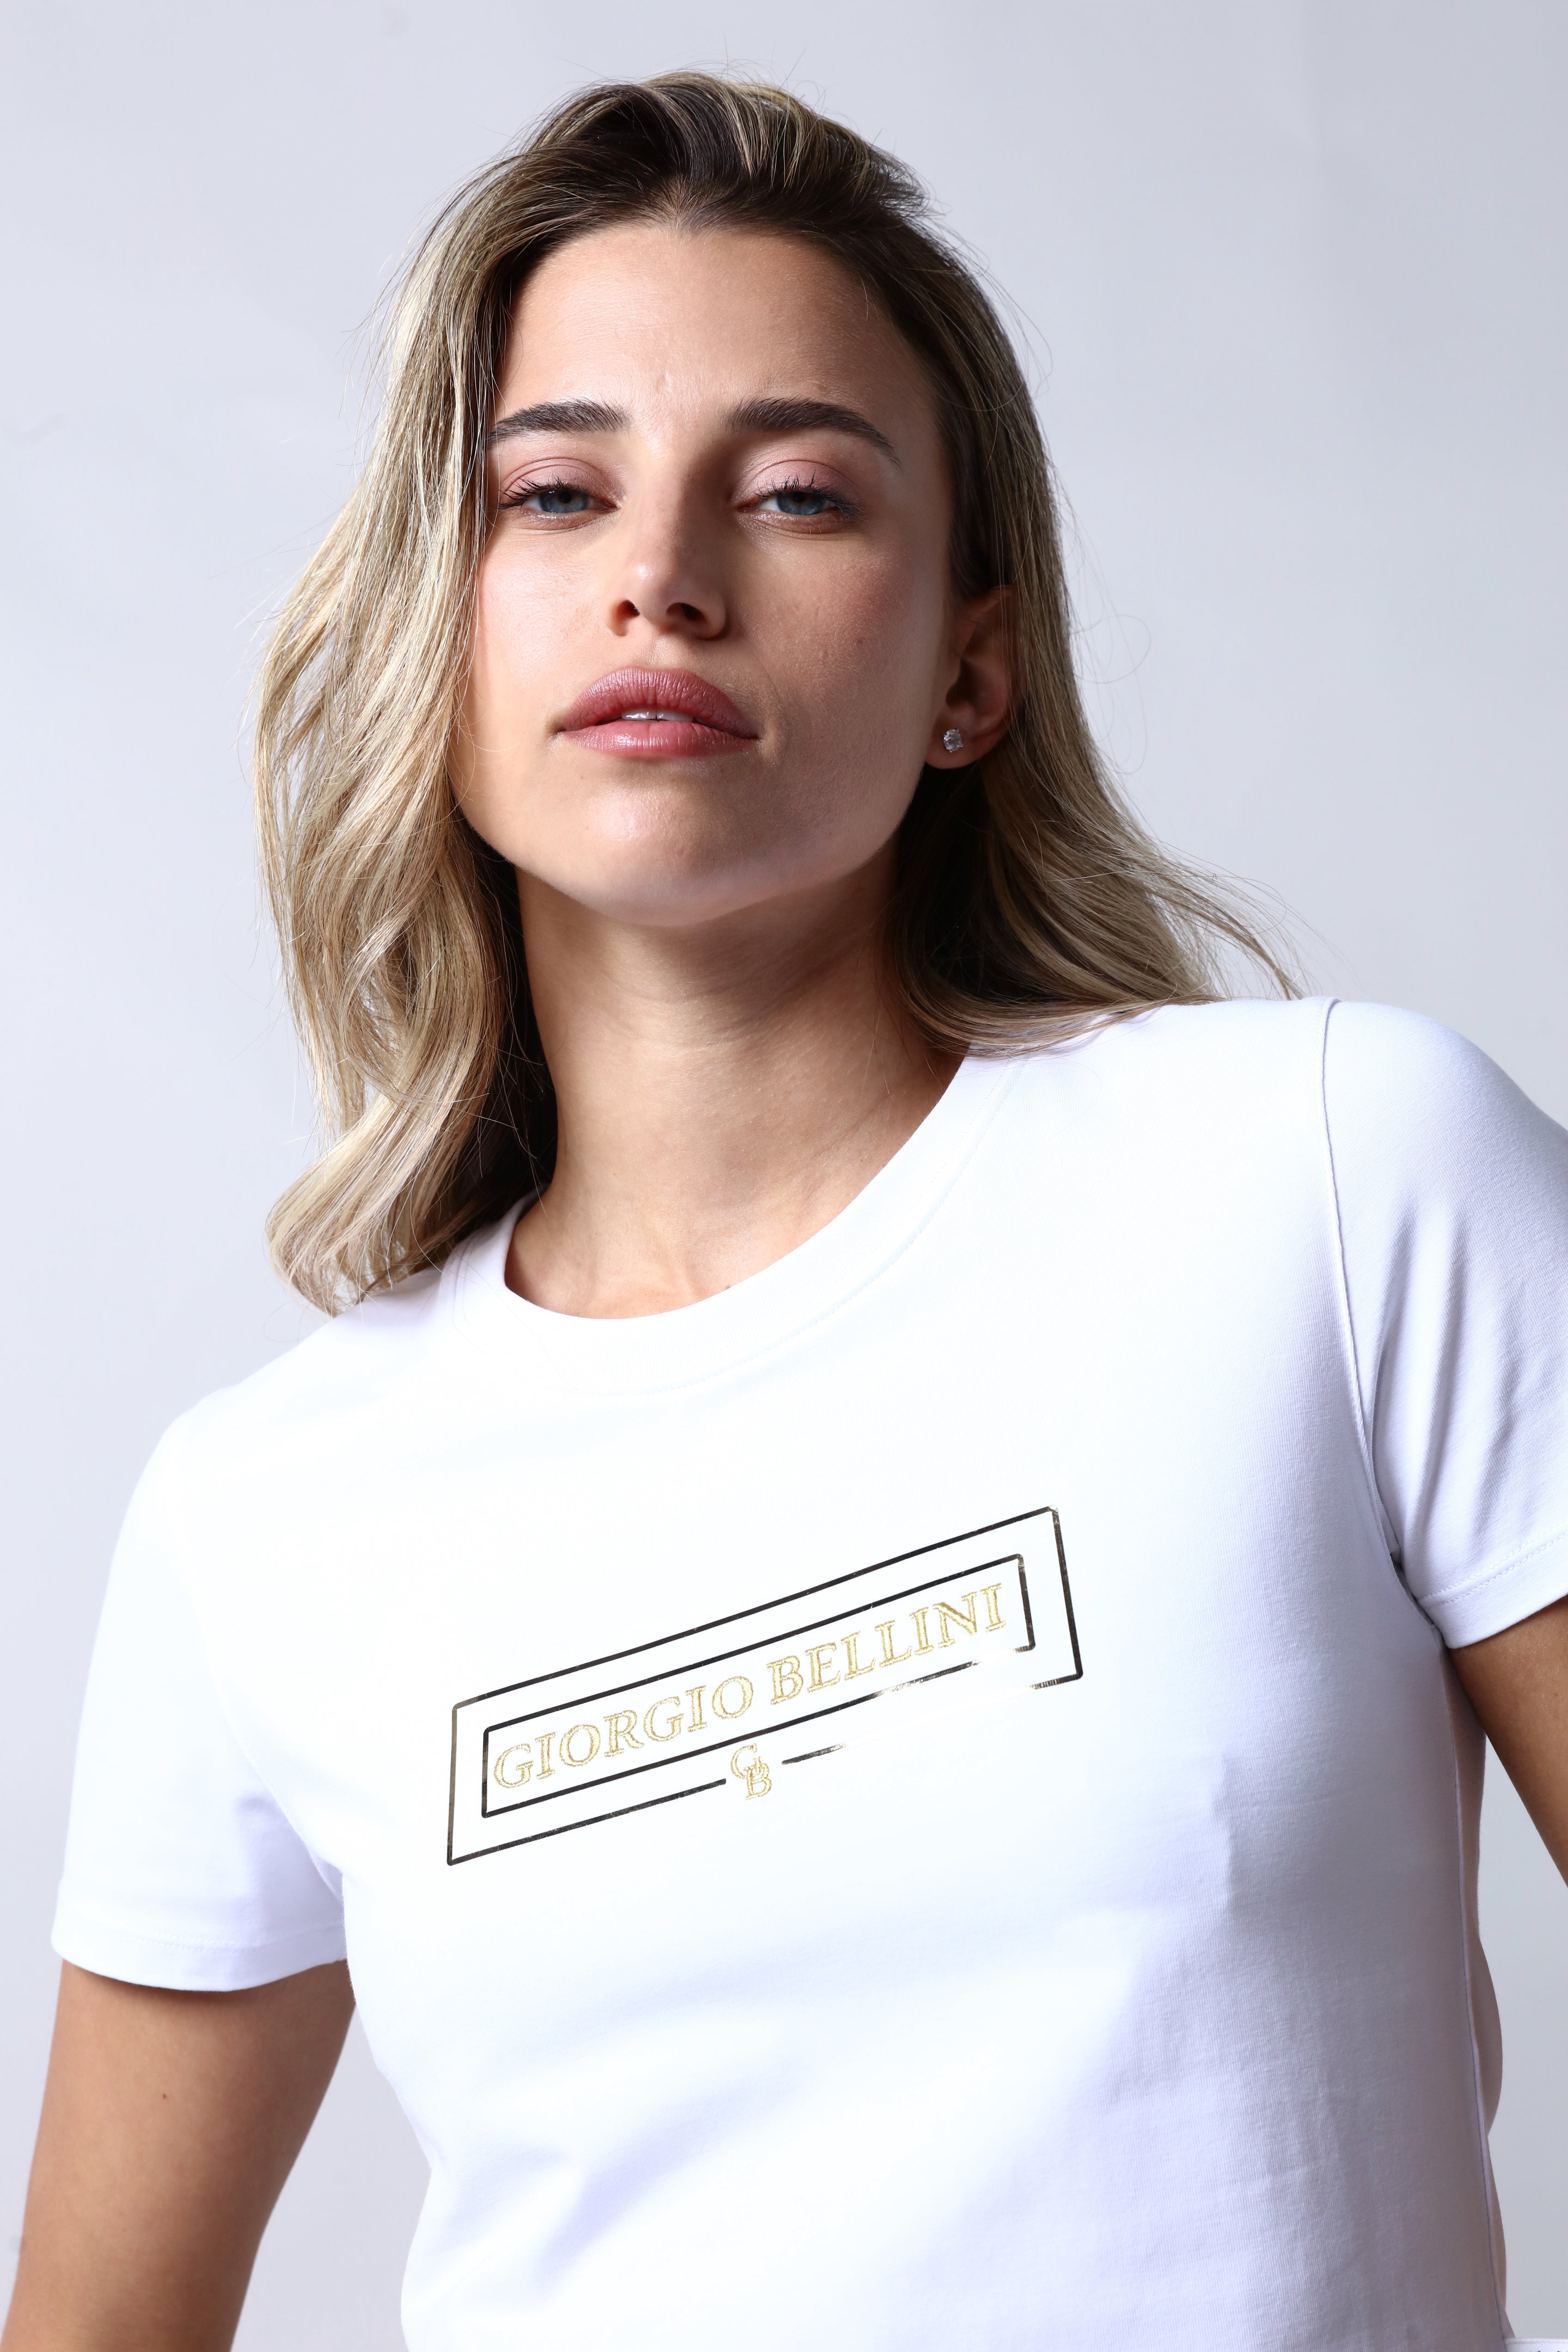 חולצת טי שירט GIORGIO BELLINI בצבע לבן לנשים